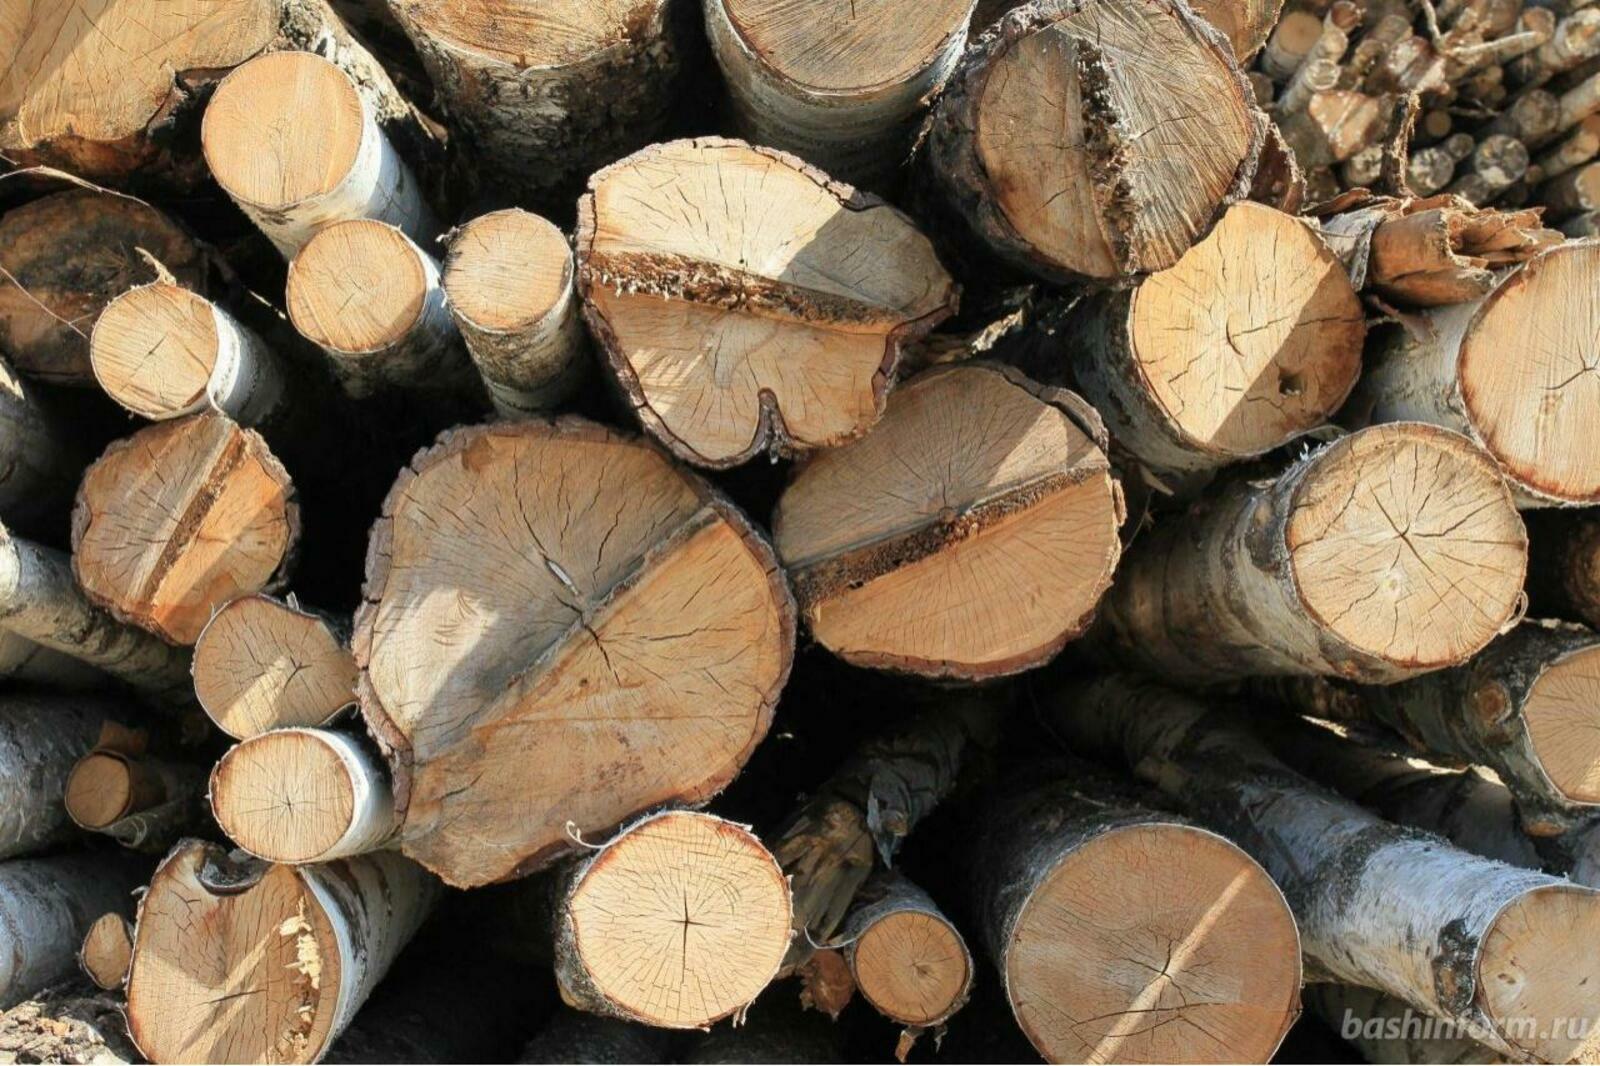 Кто в Башкирии может получить древесину для собственных нужд